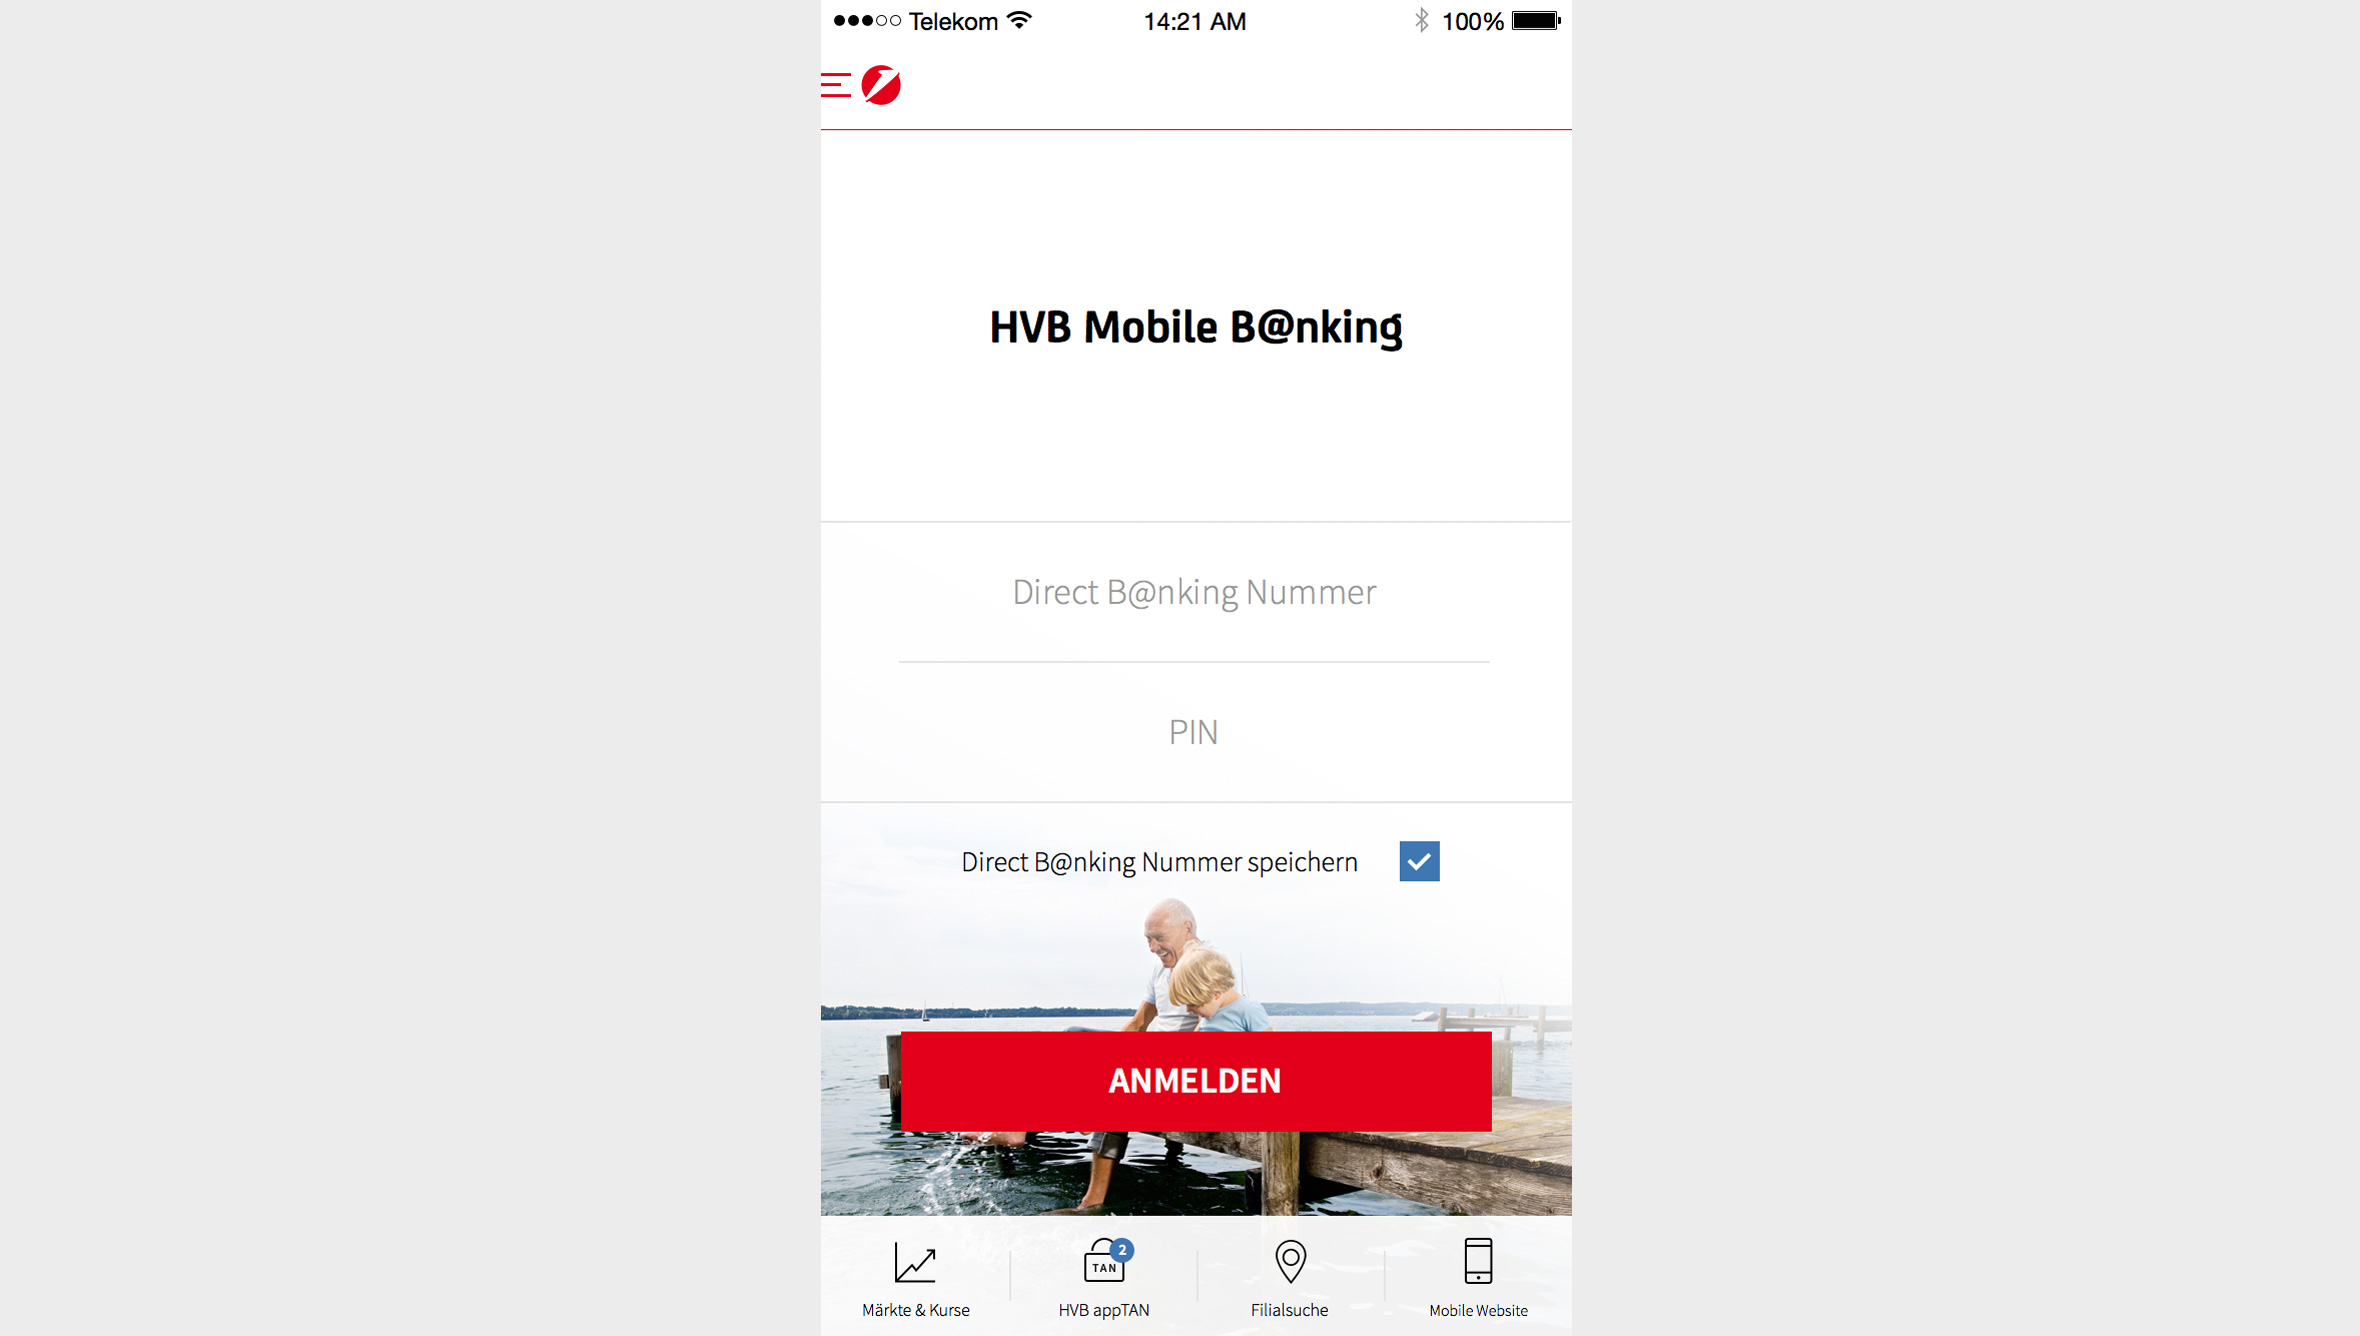 Die HVB-App ermöglicht seit 2010 Privatkunden das Mobile Banking übers Smartphone. Seit 2012 steht der Service auch Unternehmerkunden zur Verfügung.